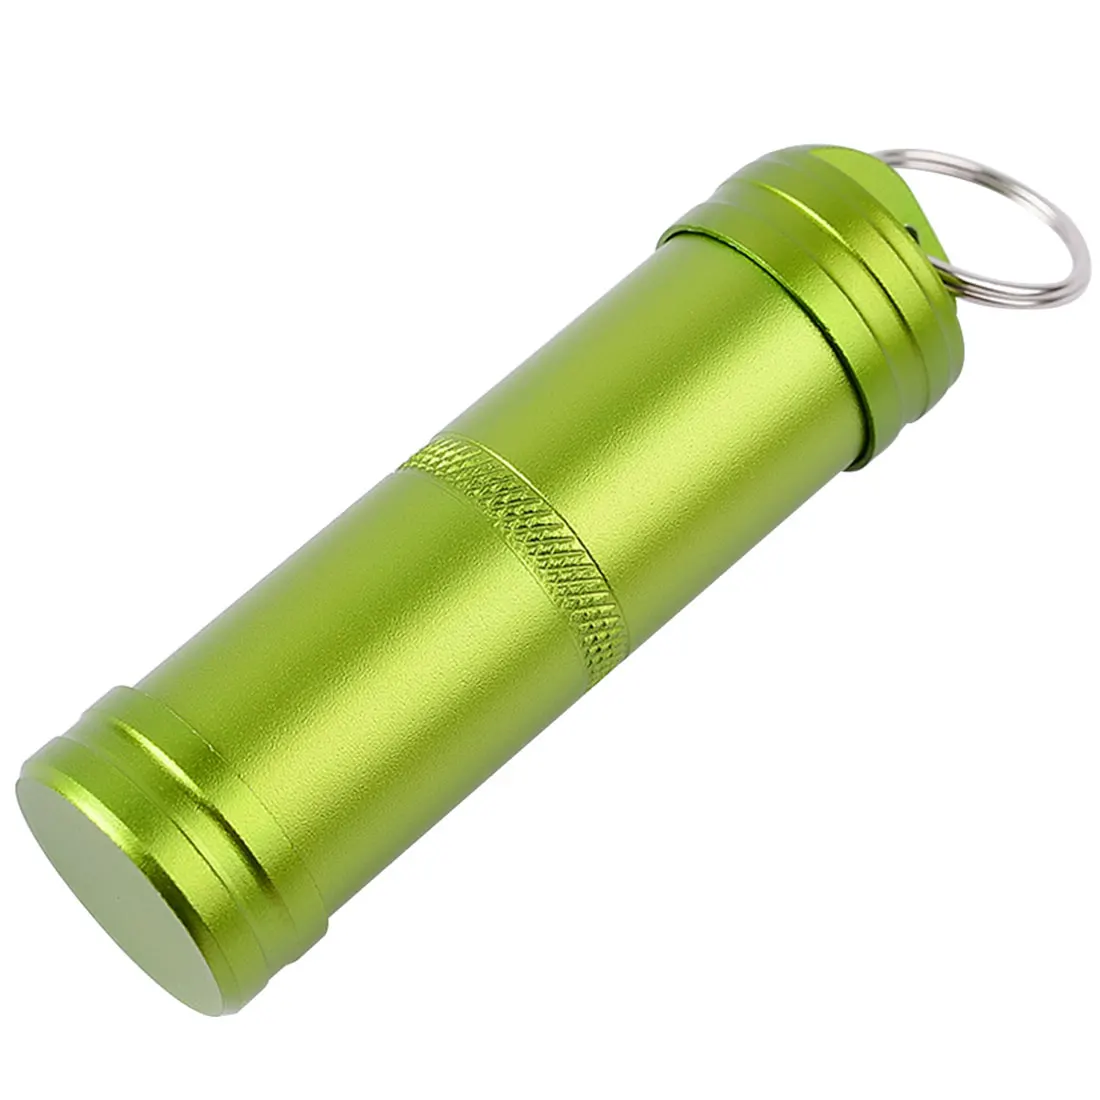 Горячая Открытый может таблетки емкость для бутылок коробка бушкрафт брелок водонепроницаемый контейнер EDC аварийного выживания туристическое снаряжение для кемпинга - Color: Green